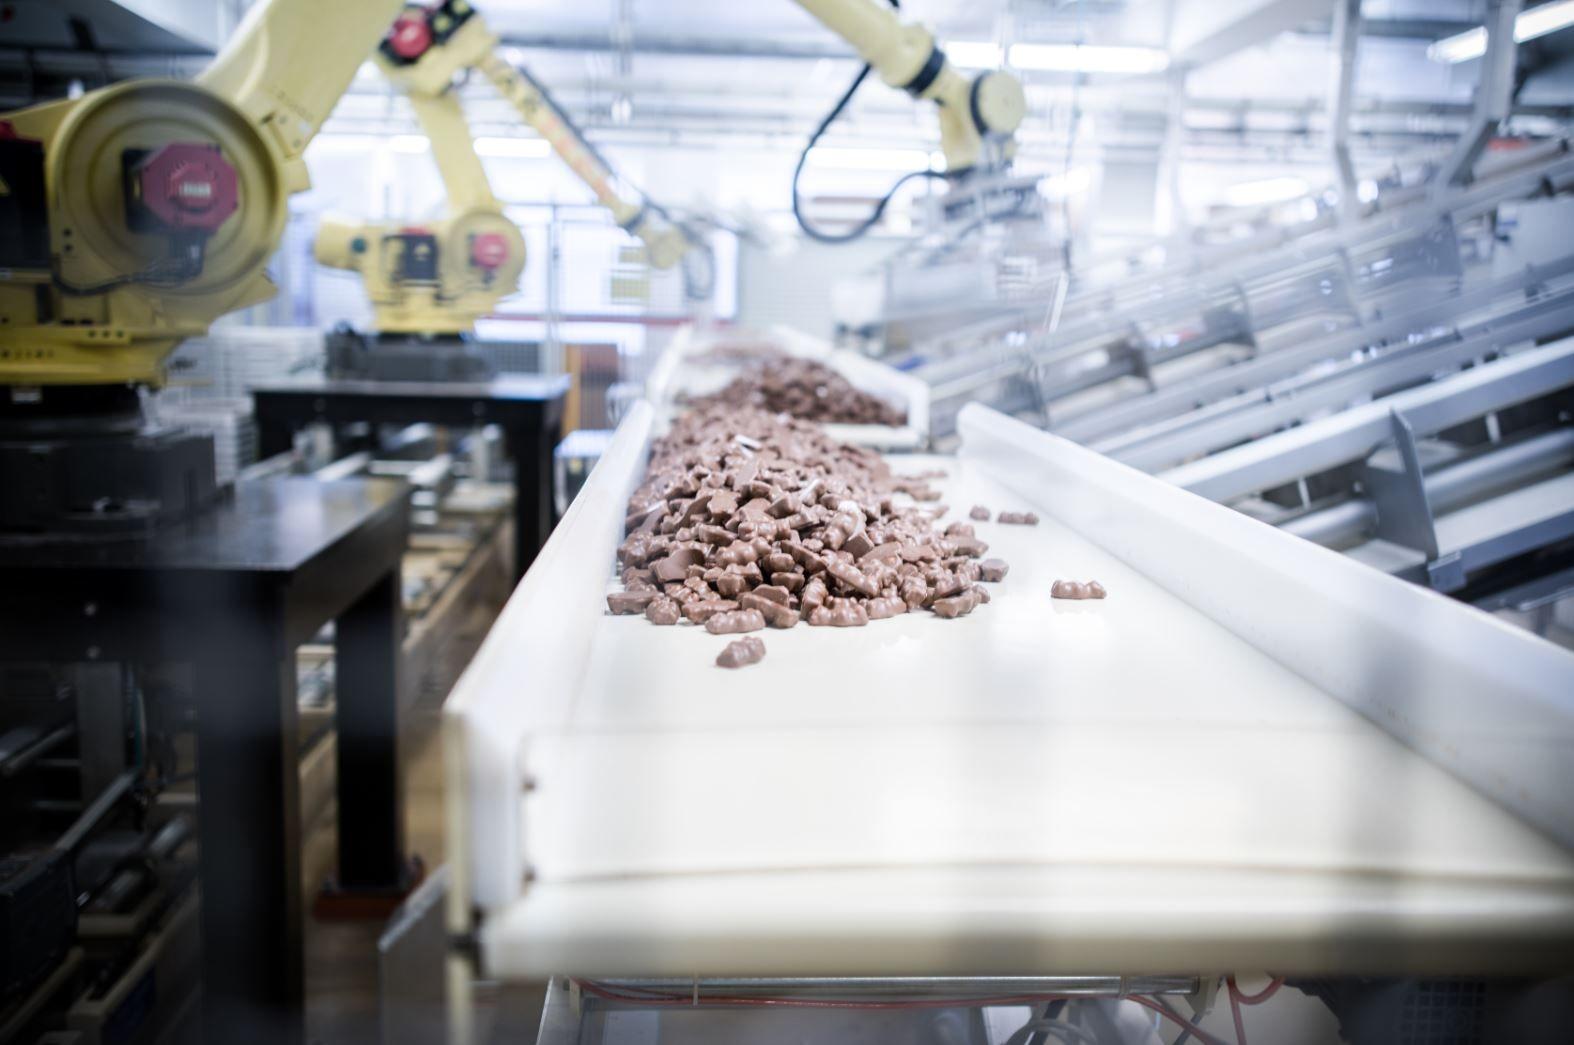 Maskiner har overtatt produksjonen på godterifabrikken. Foto: Gerhardsen & Karlsen.